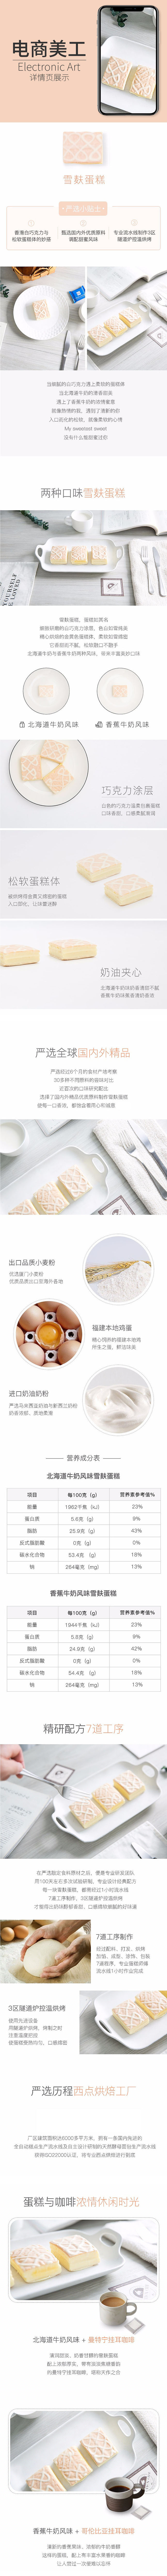 淘宝美工泗水雪麸蛋糕营养小零食作品